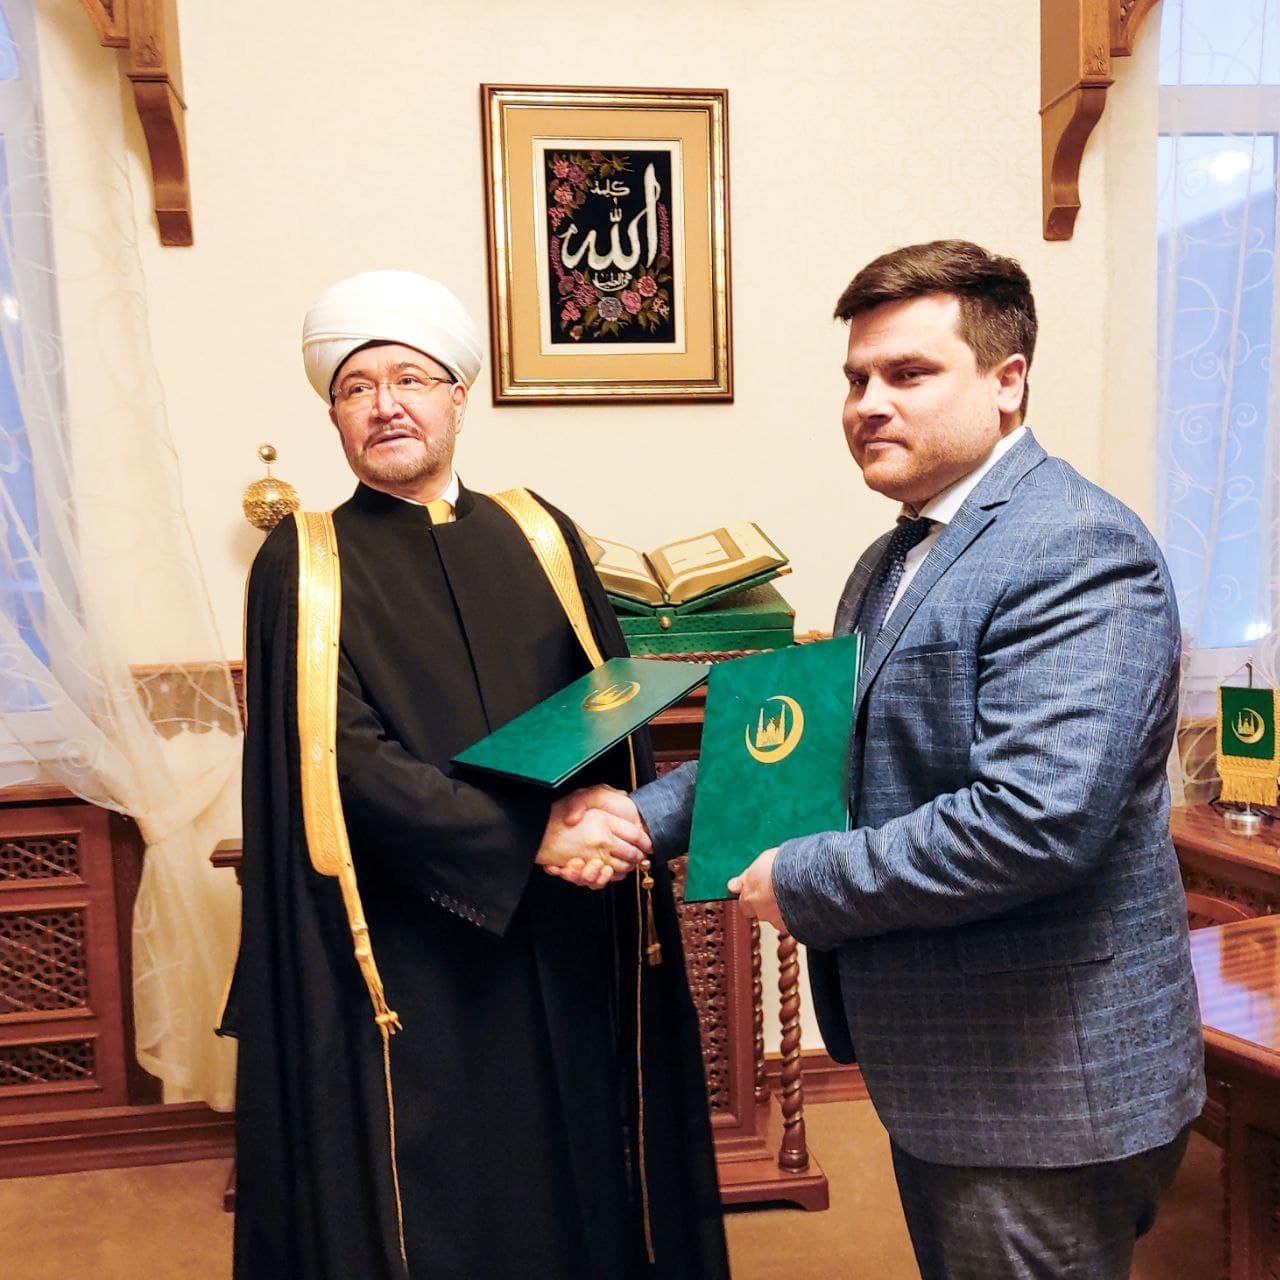 Росаккредитация и Духовное управление мусульман РФ подписали соглашение о сотрудничестве